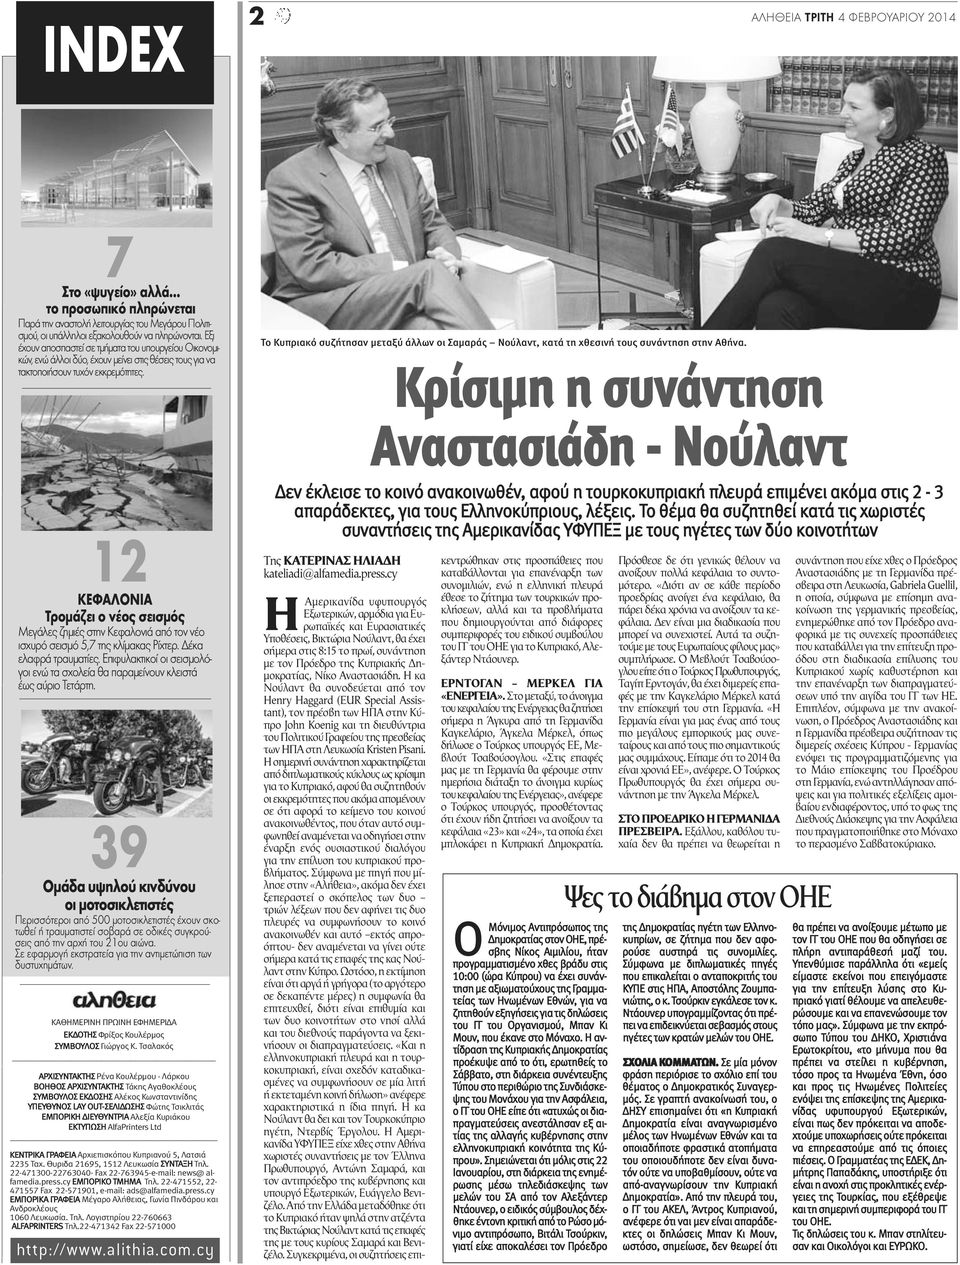 Το Κυπριακό συζήτησαν μεταξύ άλλων οι Σαμαράς Νούλαντ, κατά τη χθεσινή τους συνάντηση στην Αθήνα.